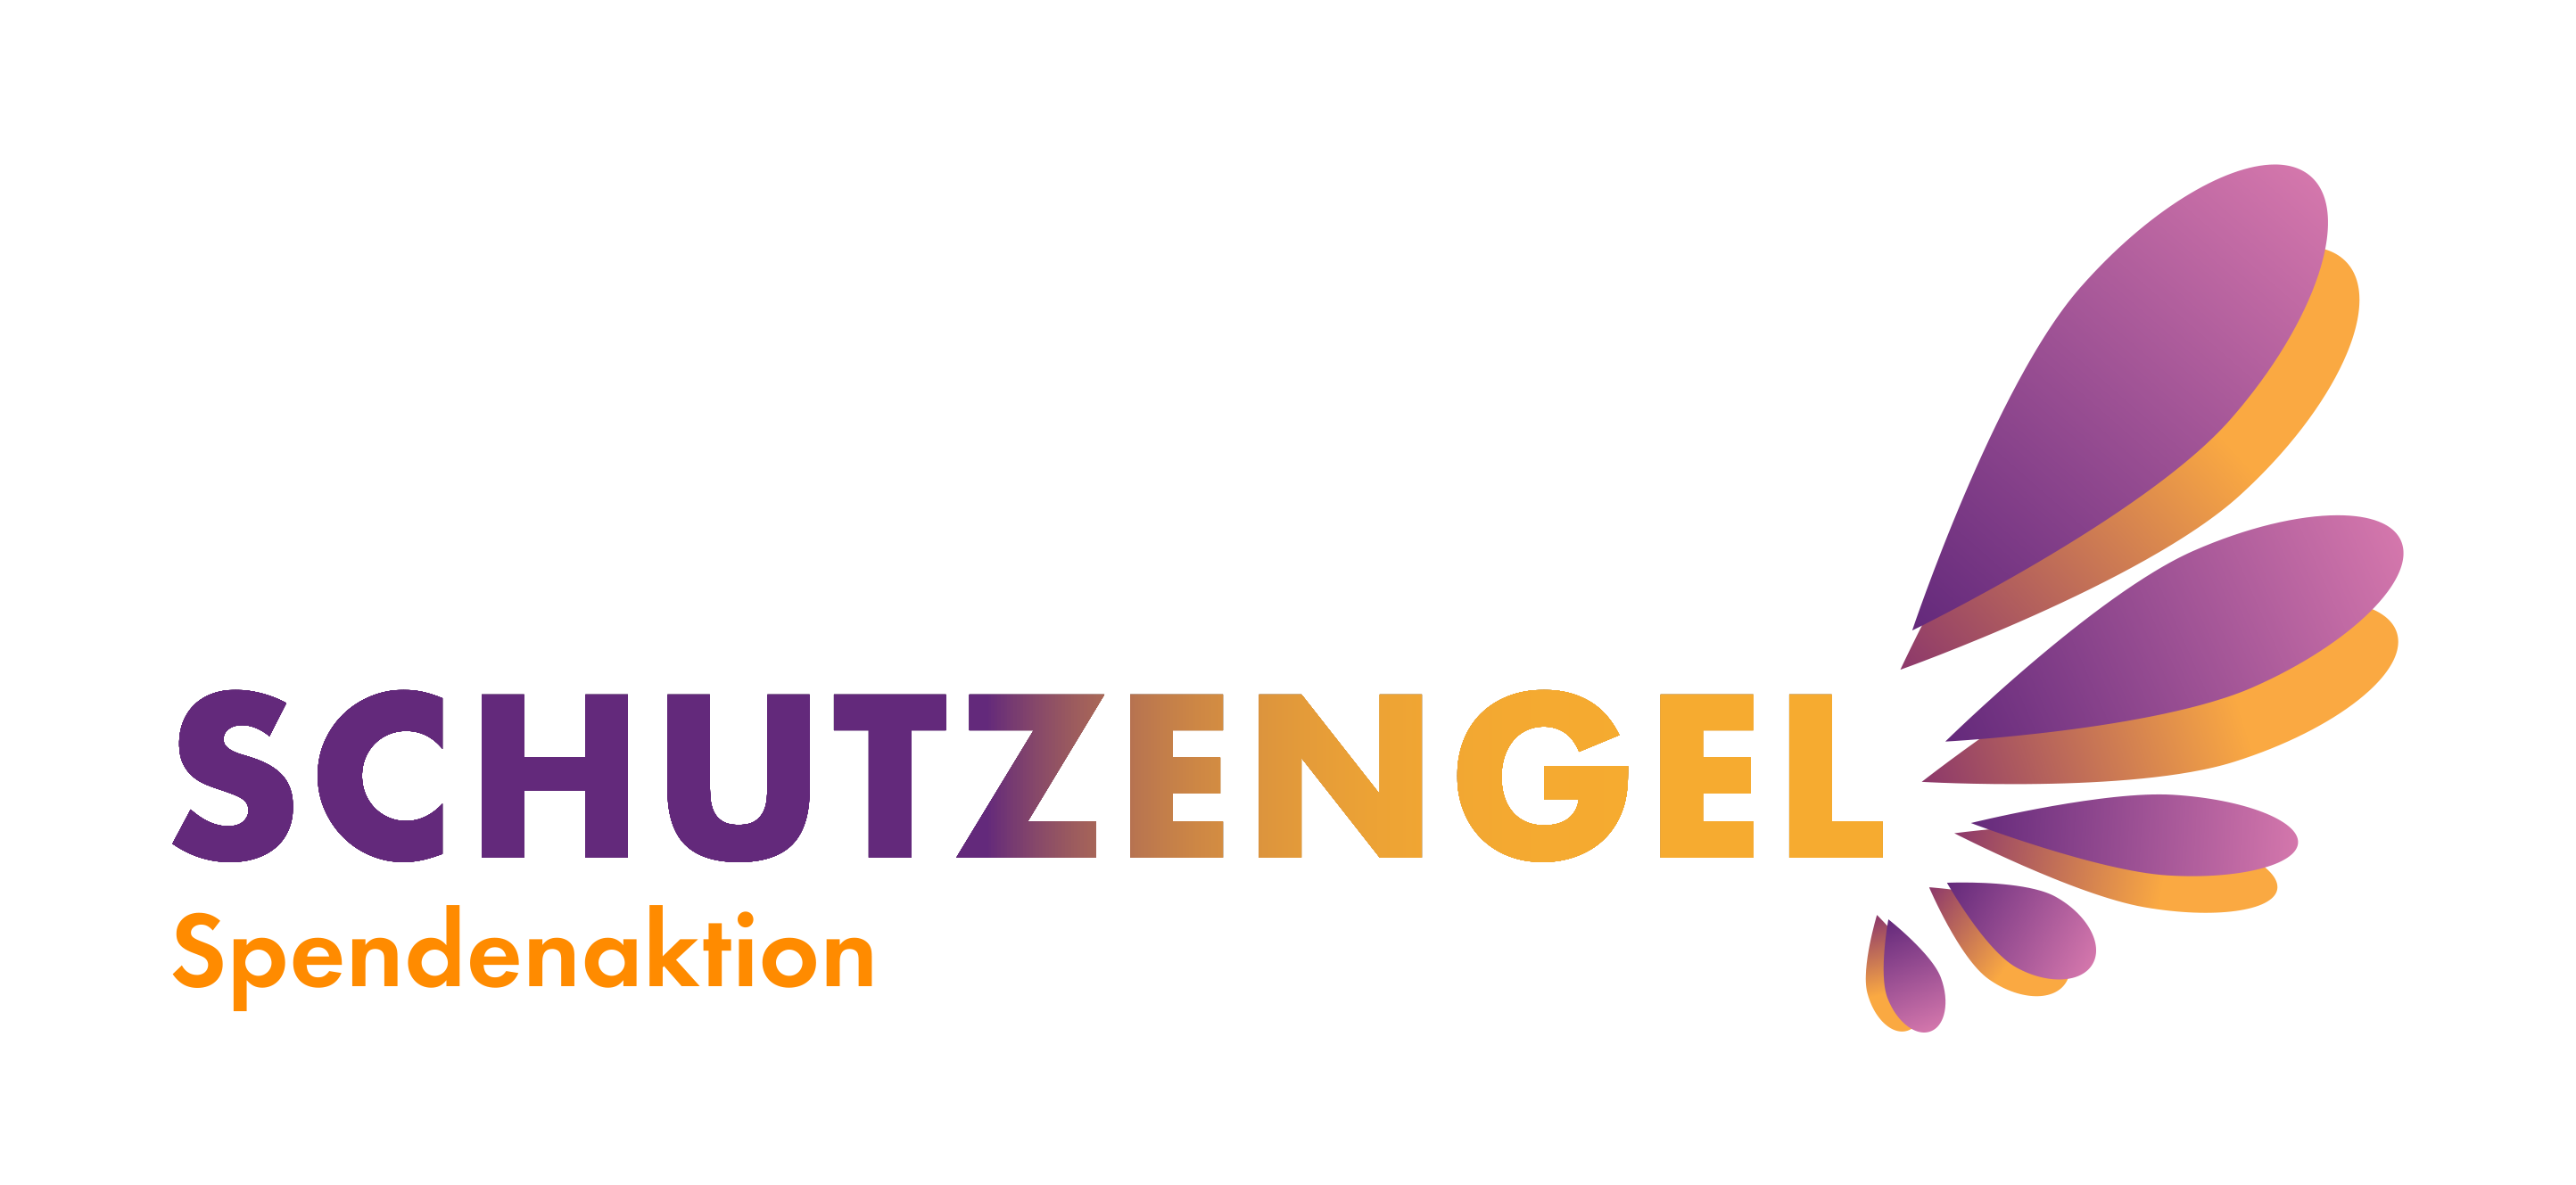 Schutzengel logo